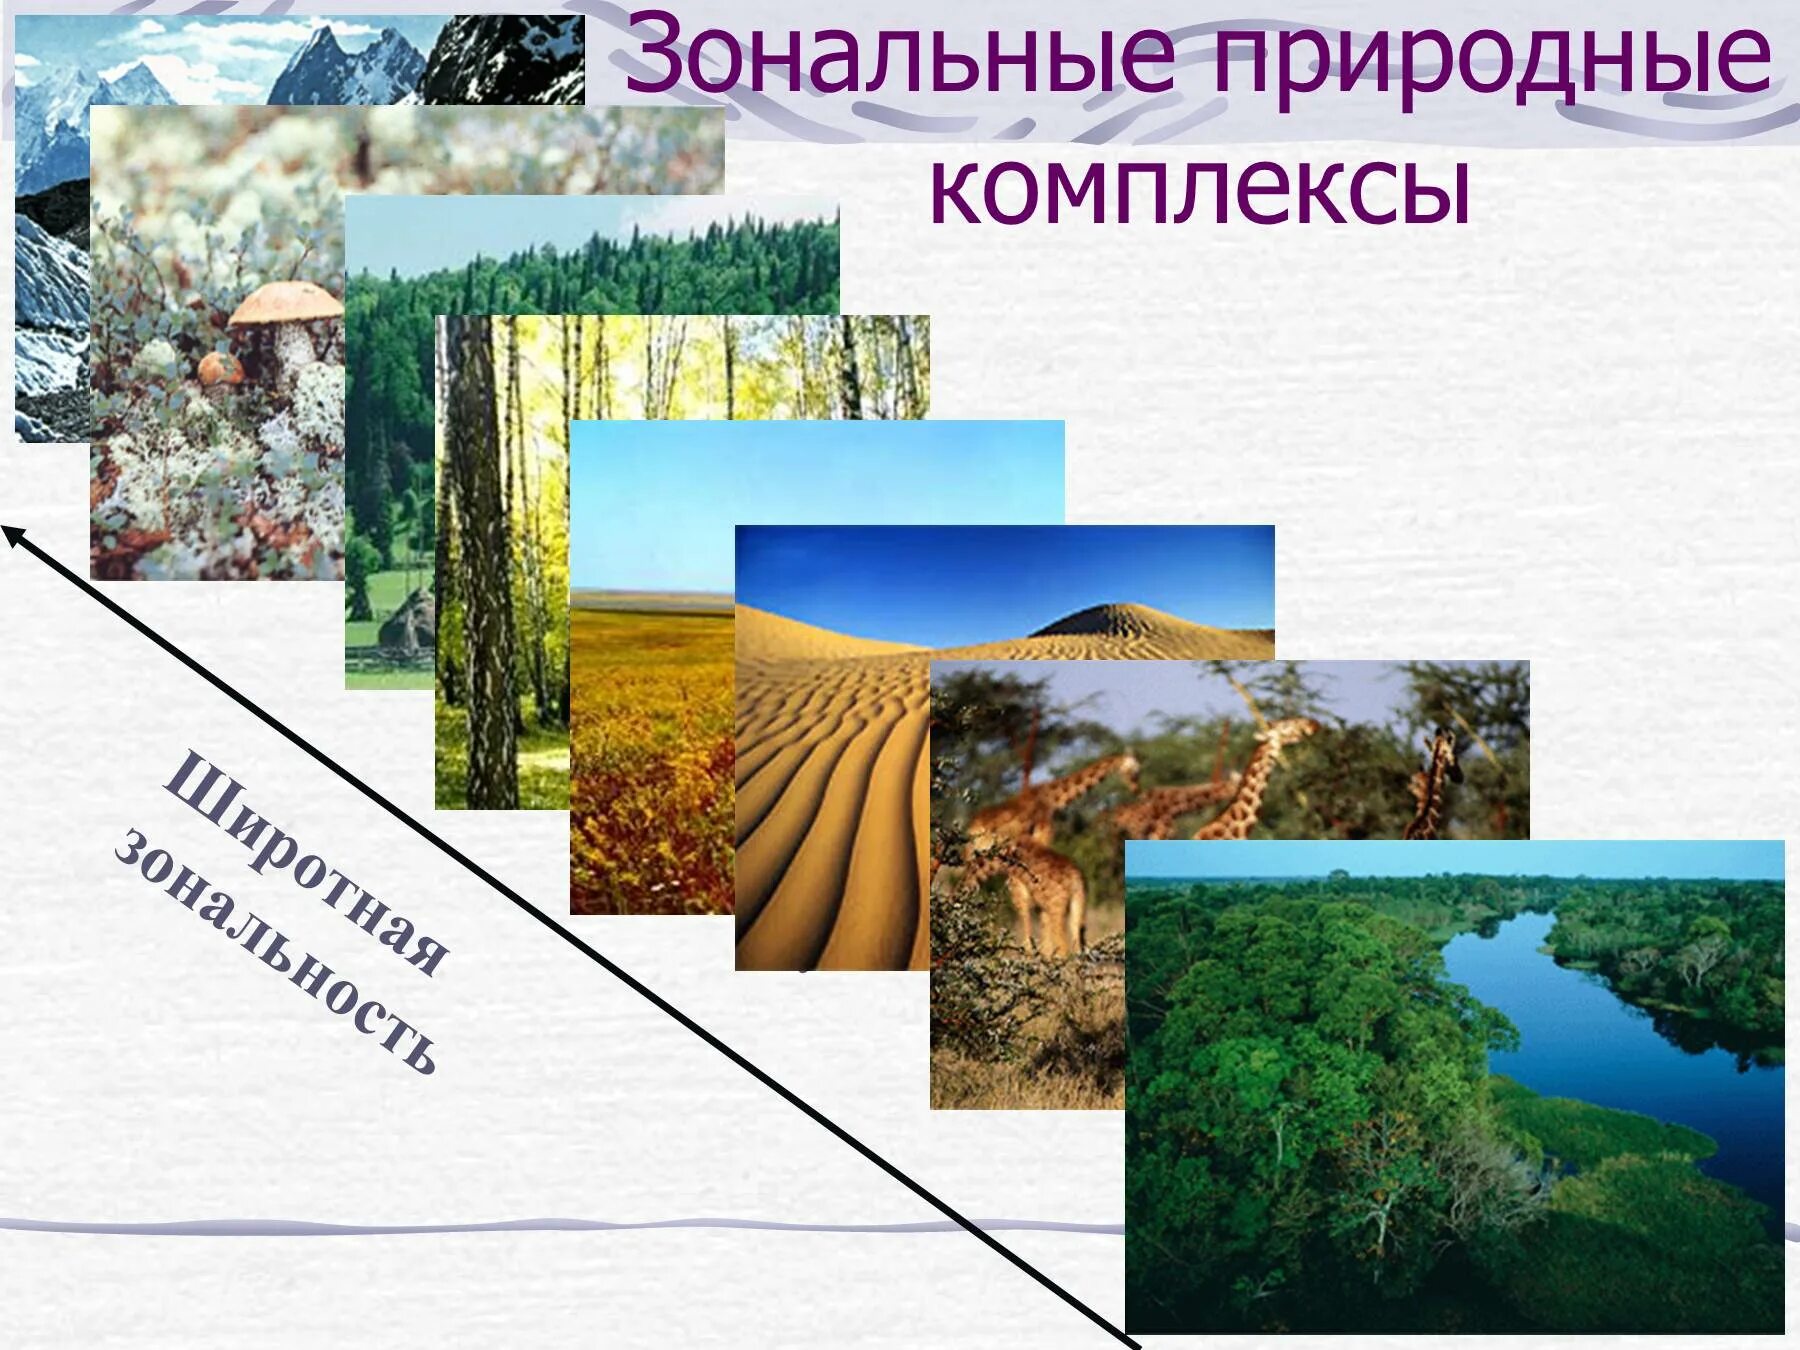 Какие природные комплексы являются наименьшими по размеру. Зональные и азональные природные комплексы. Разнообразие природных комплексов России. Широтная зональность природных комплексов. Зональные компоненты природных комплексов.